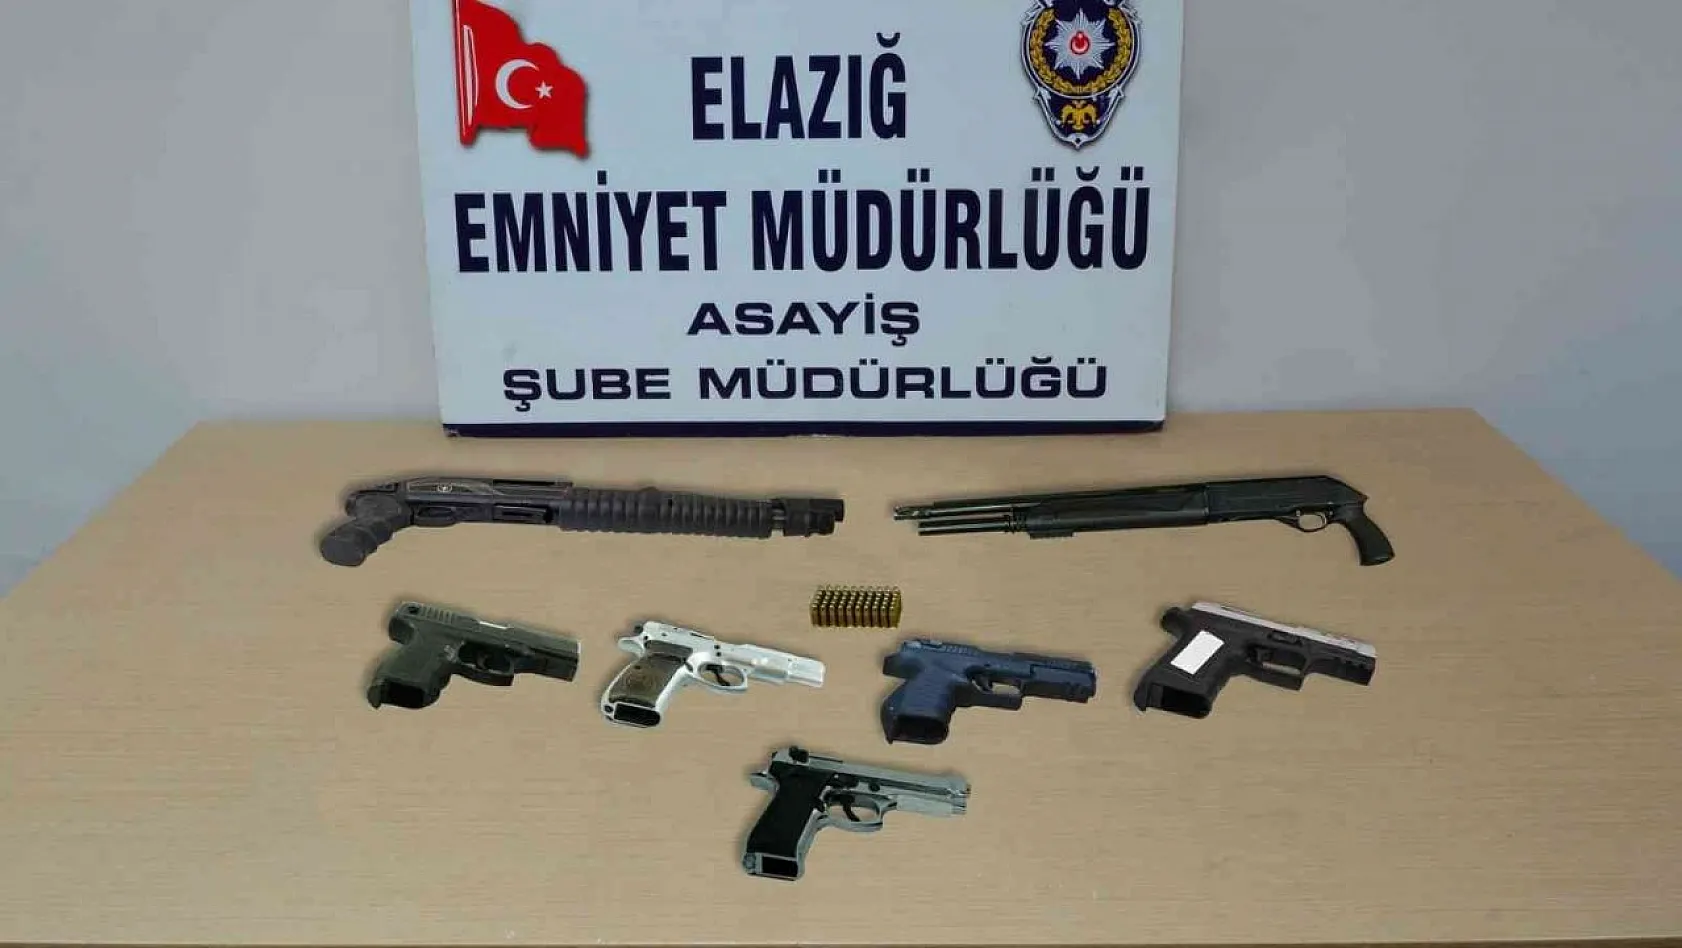 Elazığ'da asayiş ve şok uygulamaları: 25 kişi tutuklandı